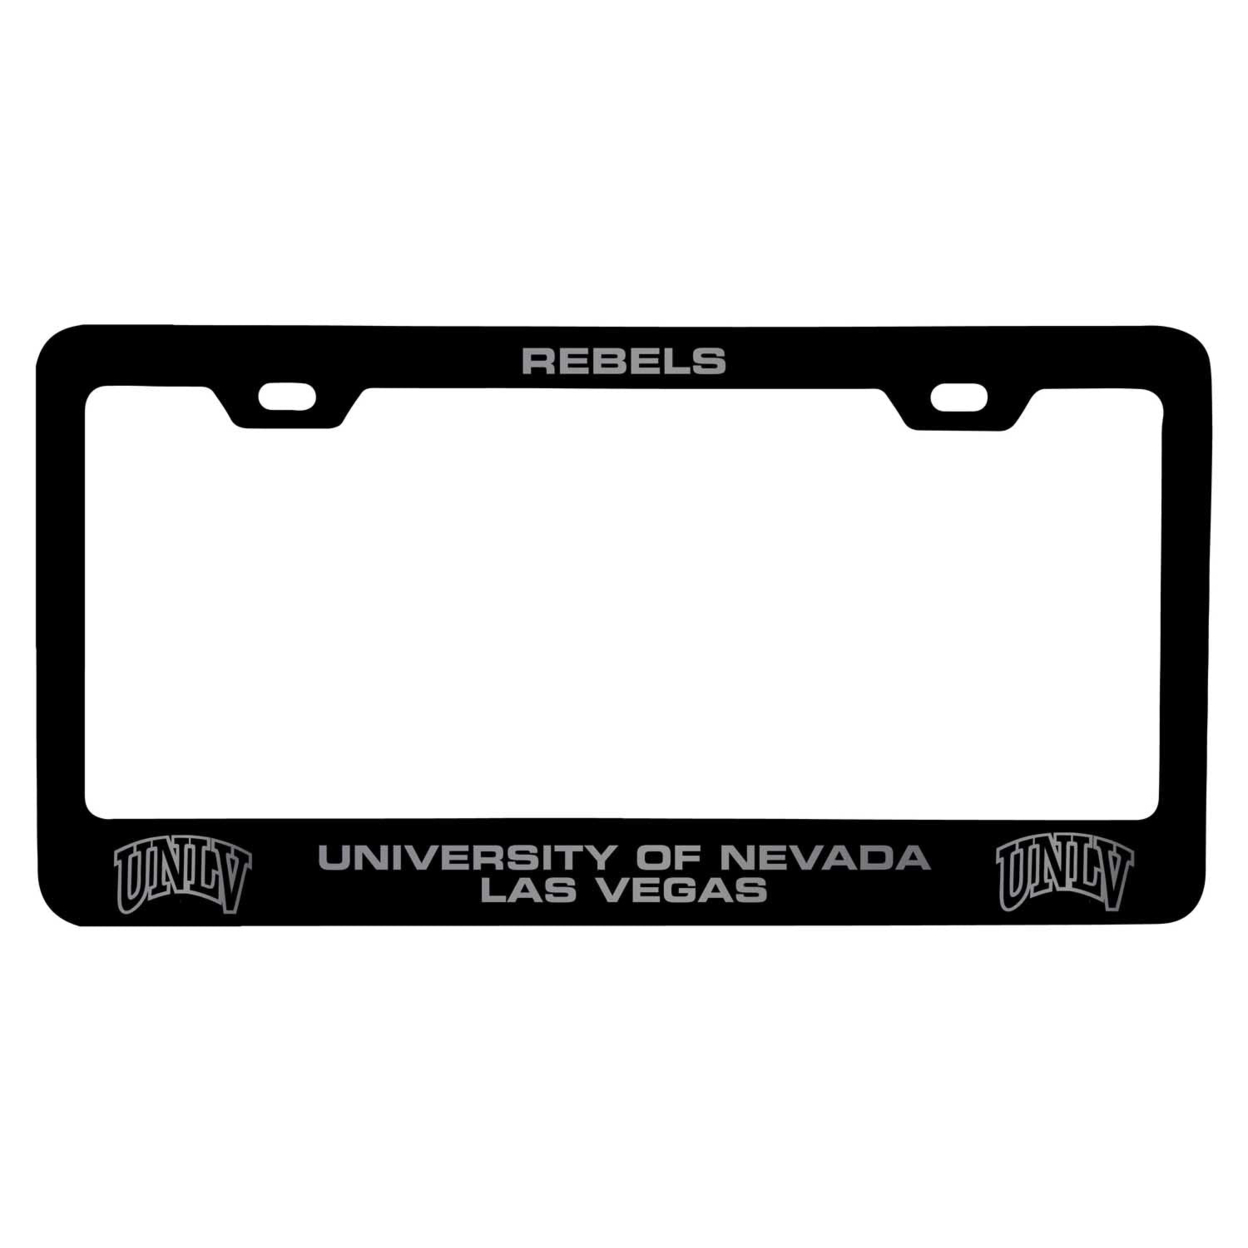 UNLV Rebels Laser Engraved Metal License Plate Frame - Choose Your Color - Black